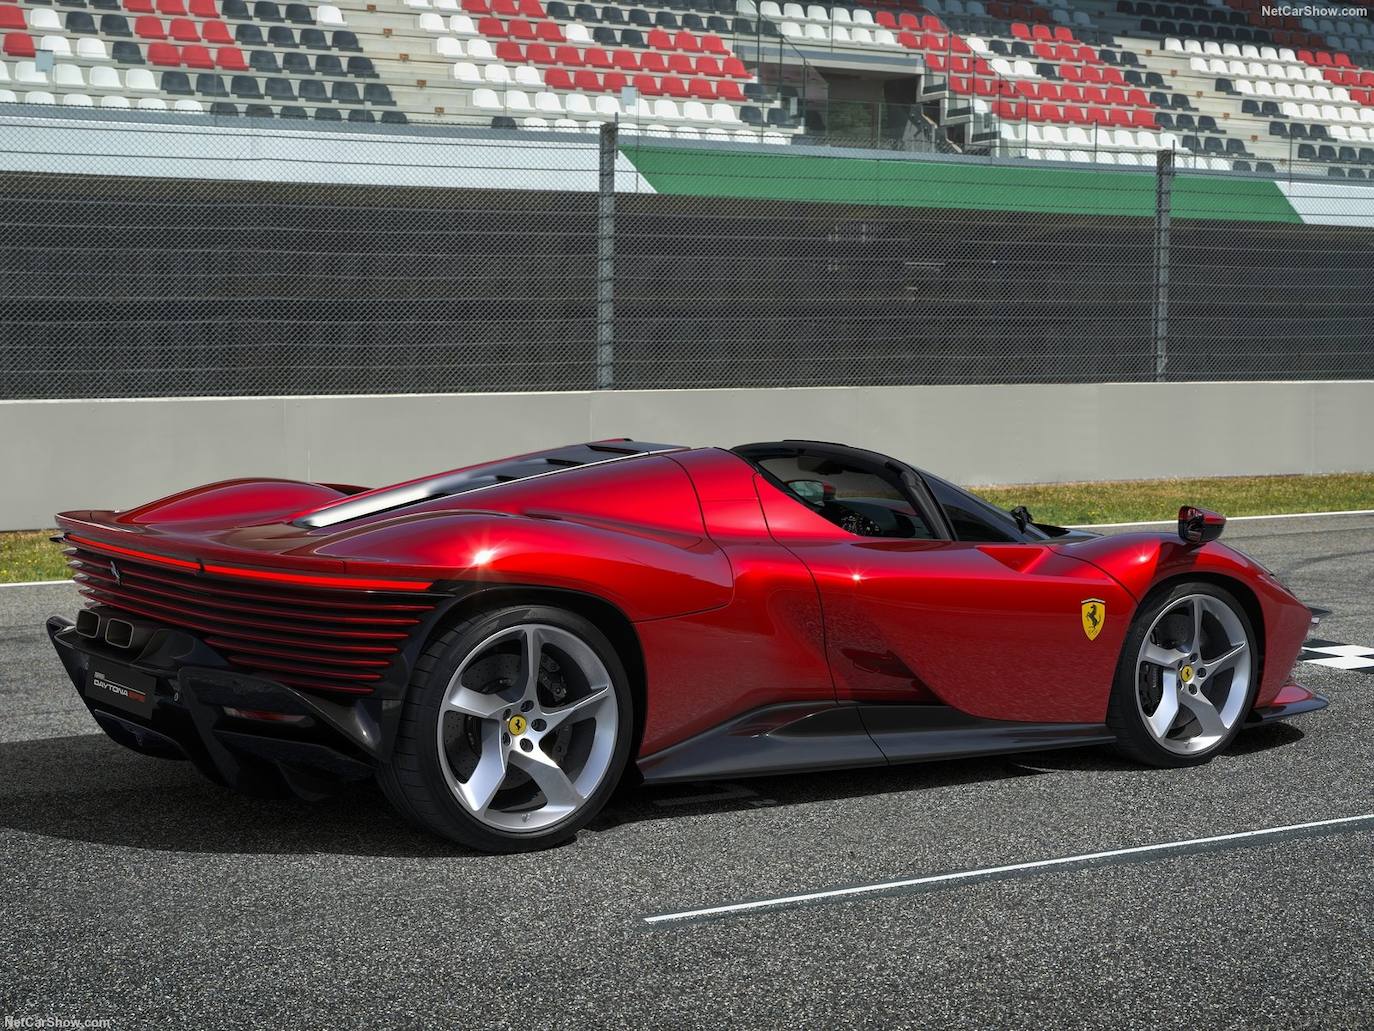 Fotos: Ferrari Daytona gana el premio al superdeportivo más hermoso de 2022